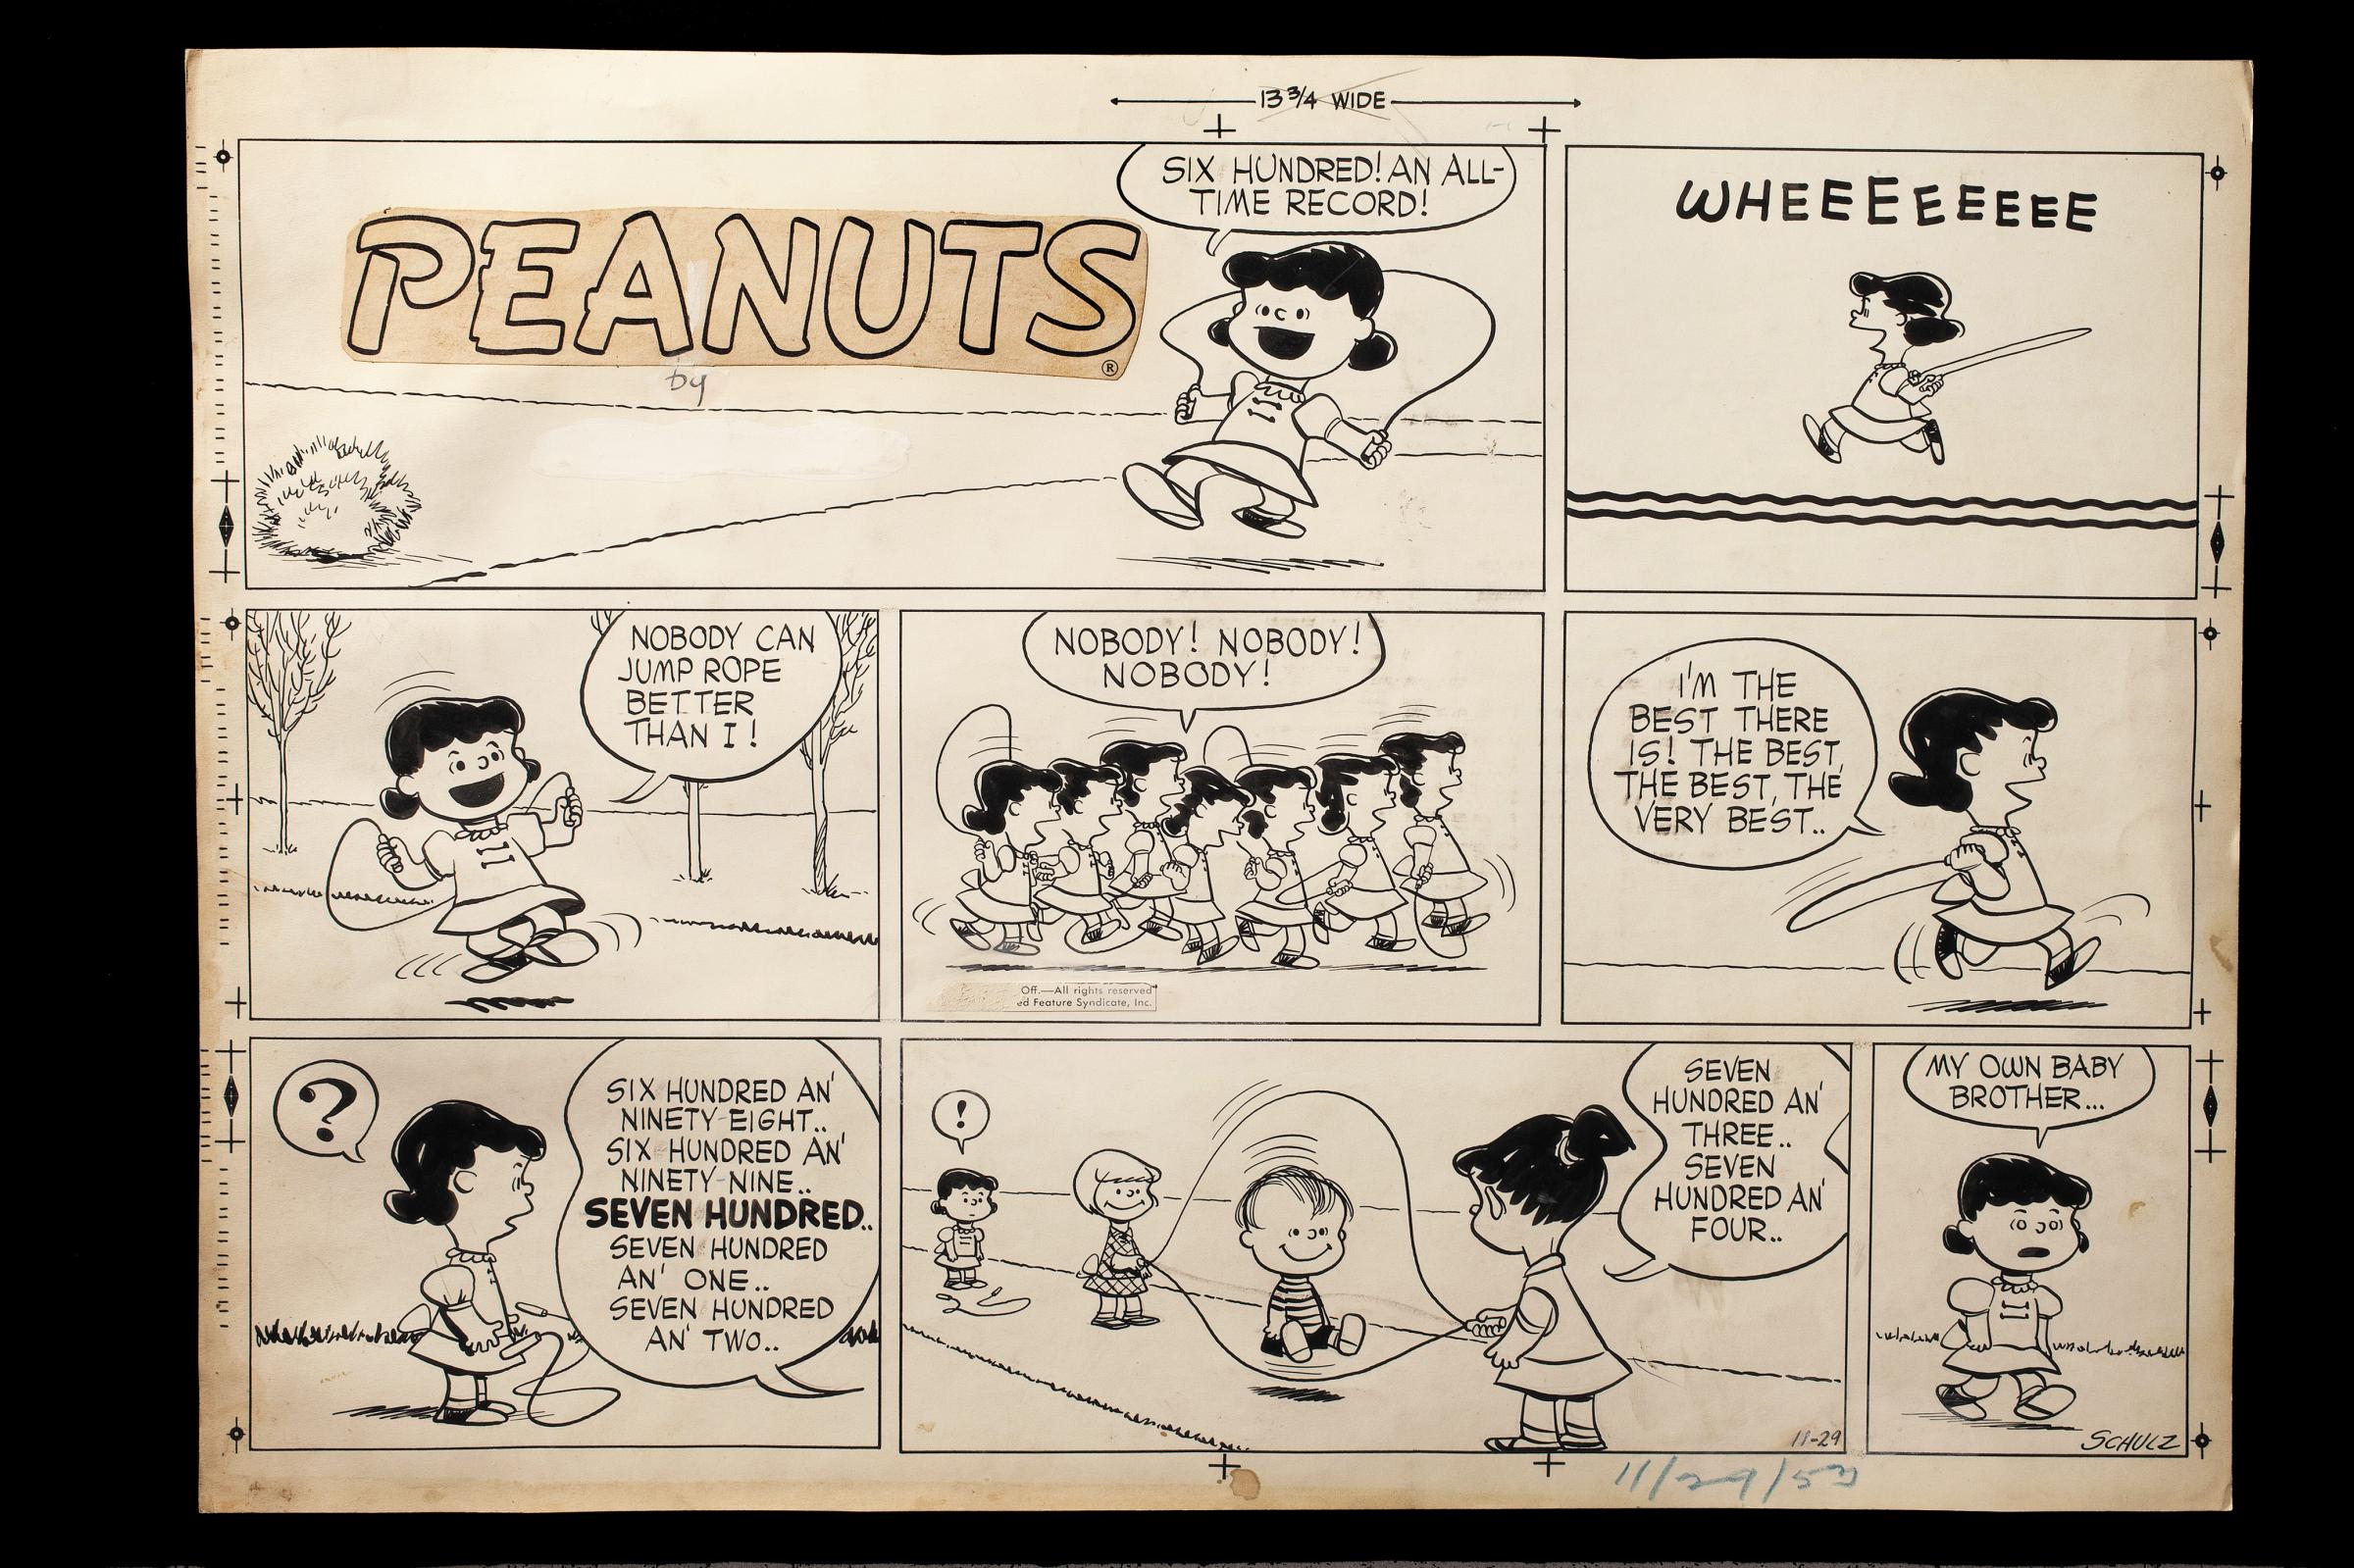 Original art for Sunday comic strip, November 29, 1953.